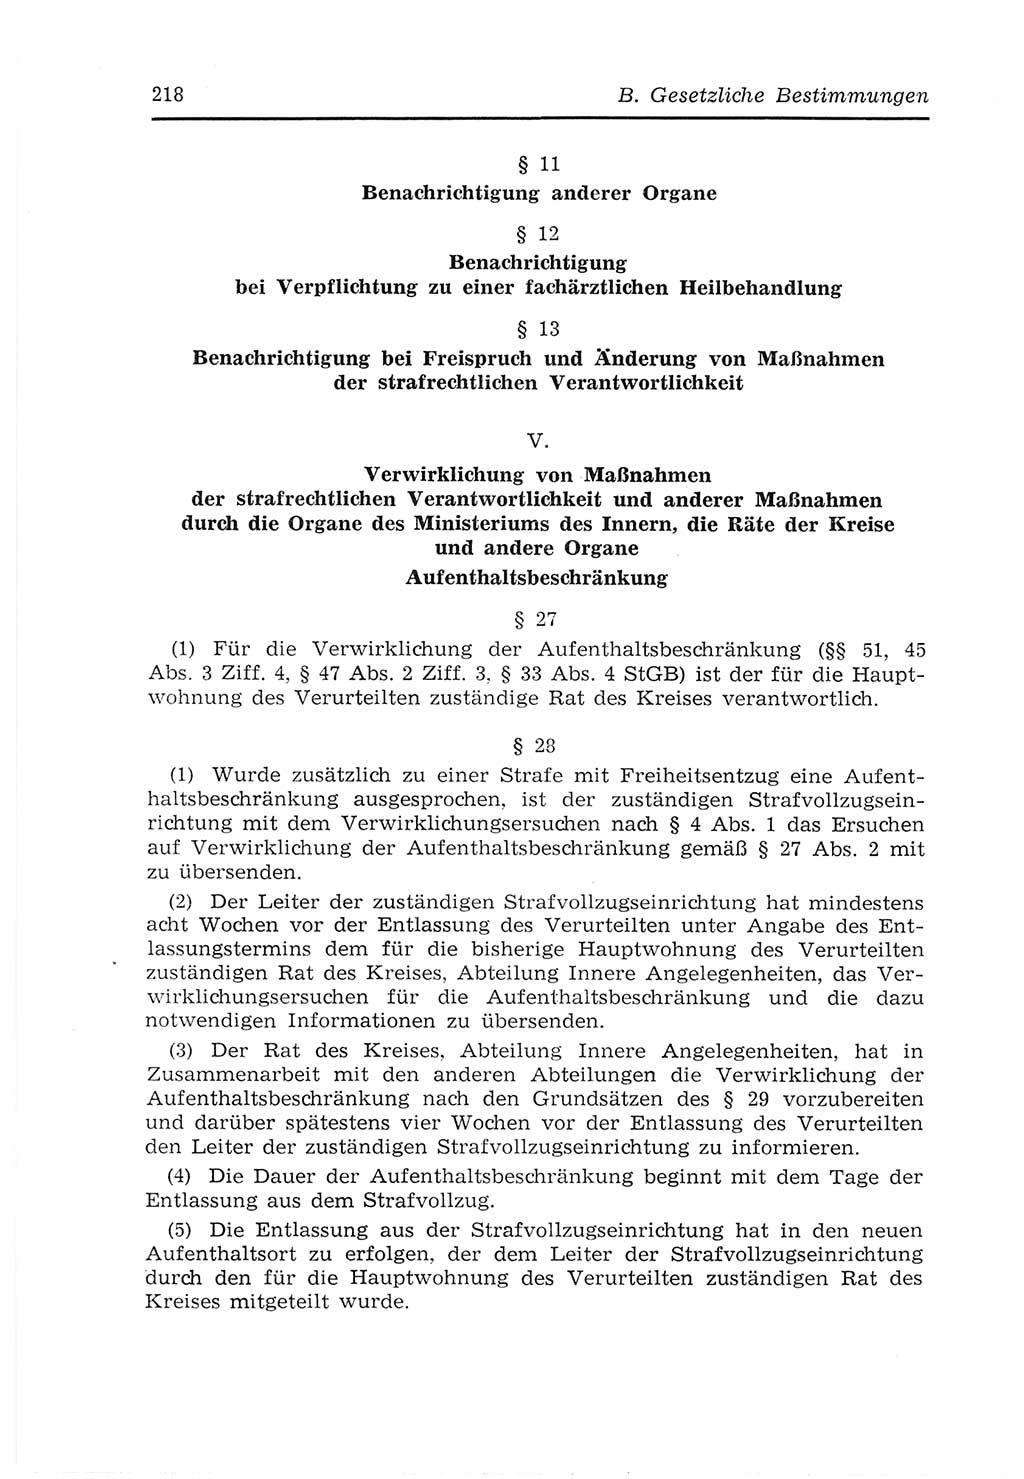 Strafvollzugs- und Wiedereingliederungsgesetz (SVWG) der Deutschen Demokratischen Republik (DDR) 1968, Seite 218 (SVWG DDR 1968, S. 218)